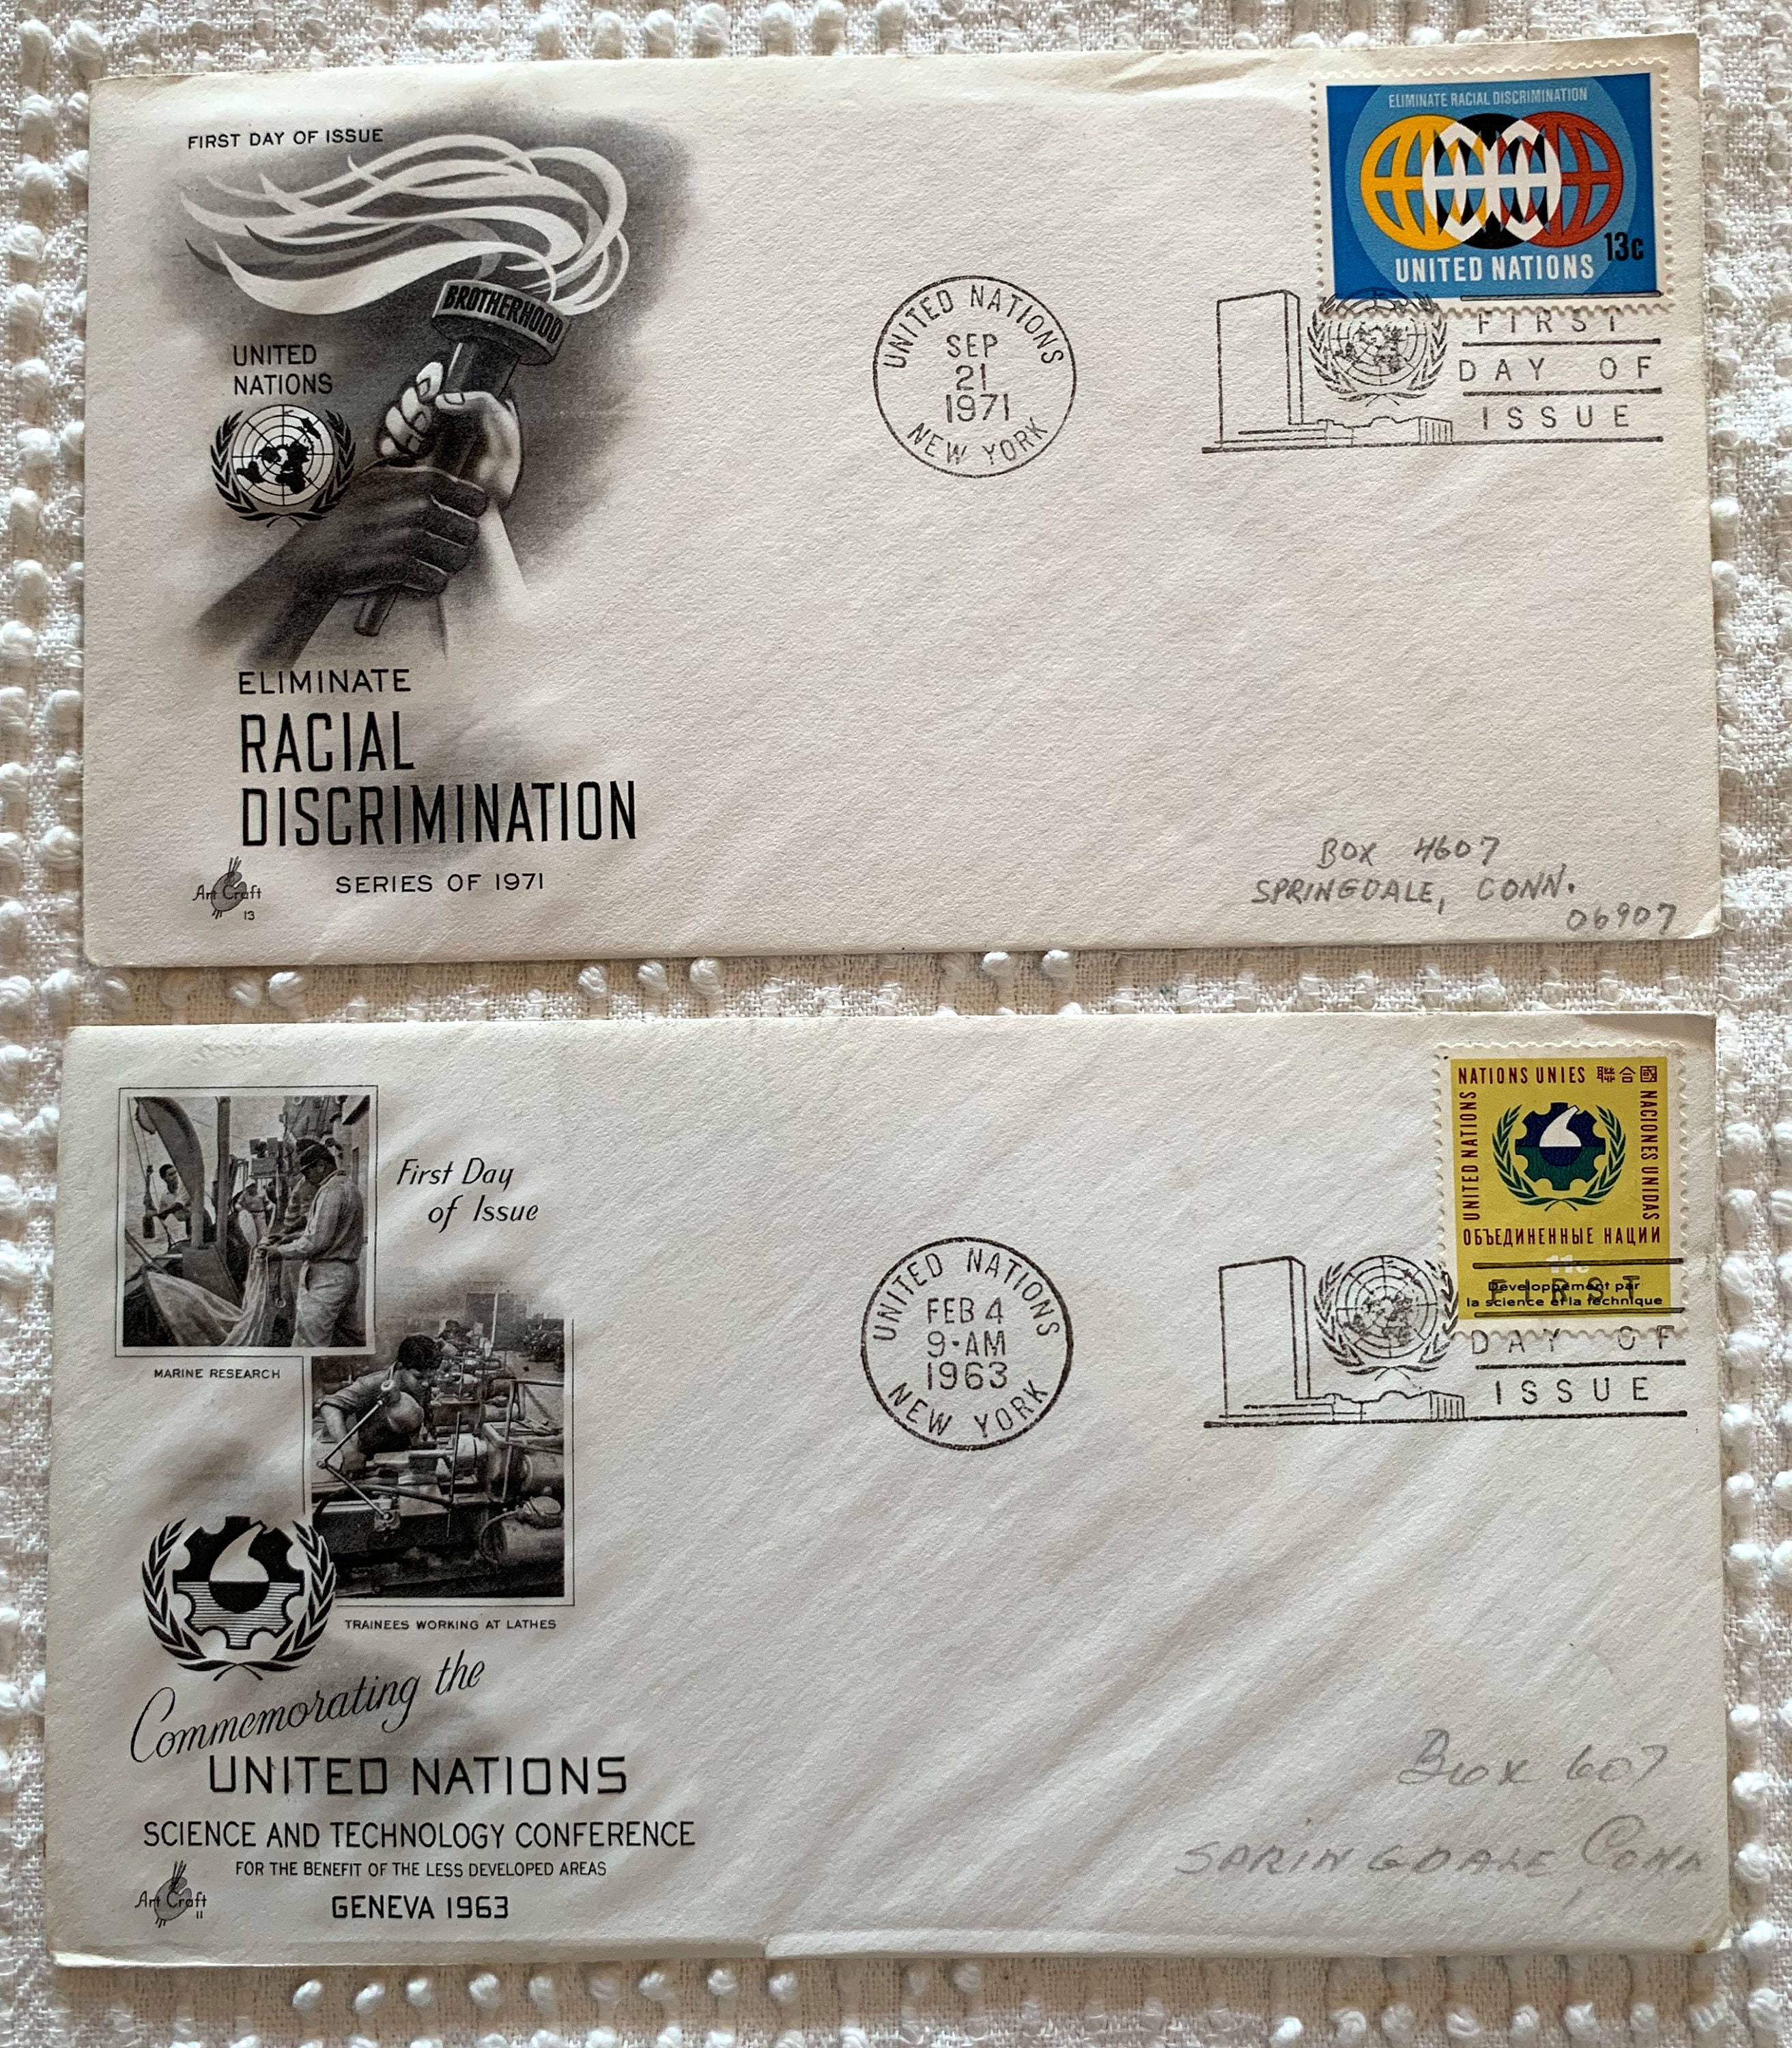 Bundle of 10 Vintage 1960s/70s Envelopes United Nations | Etsy